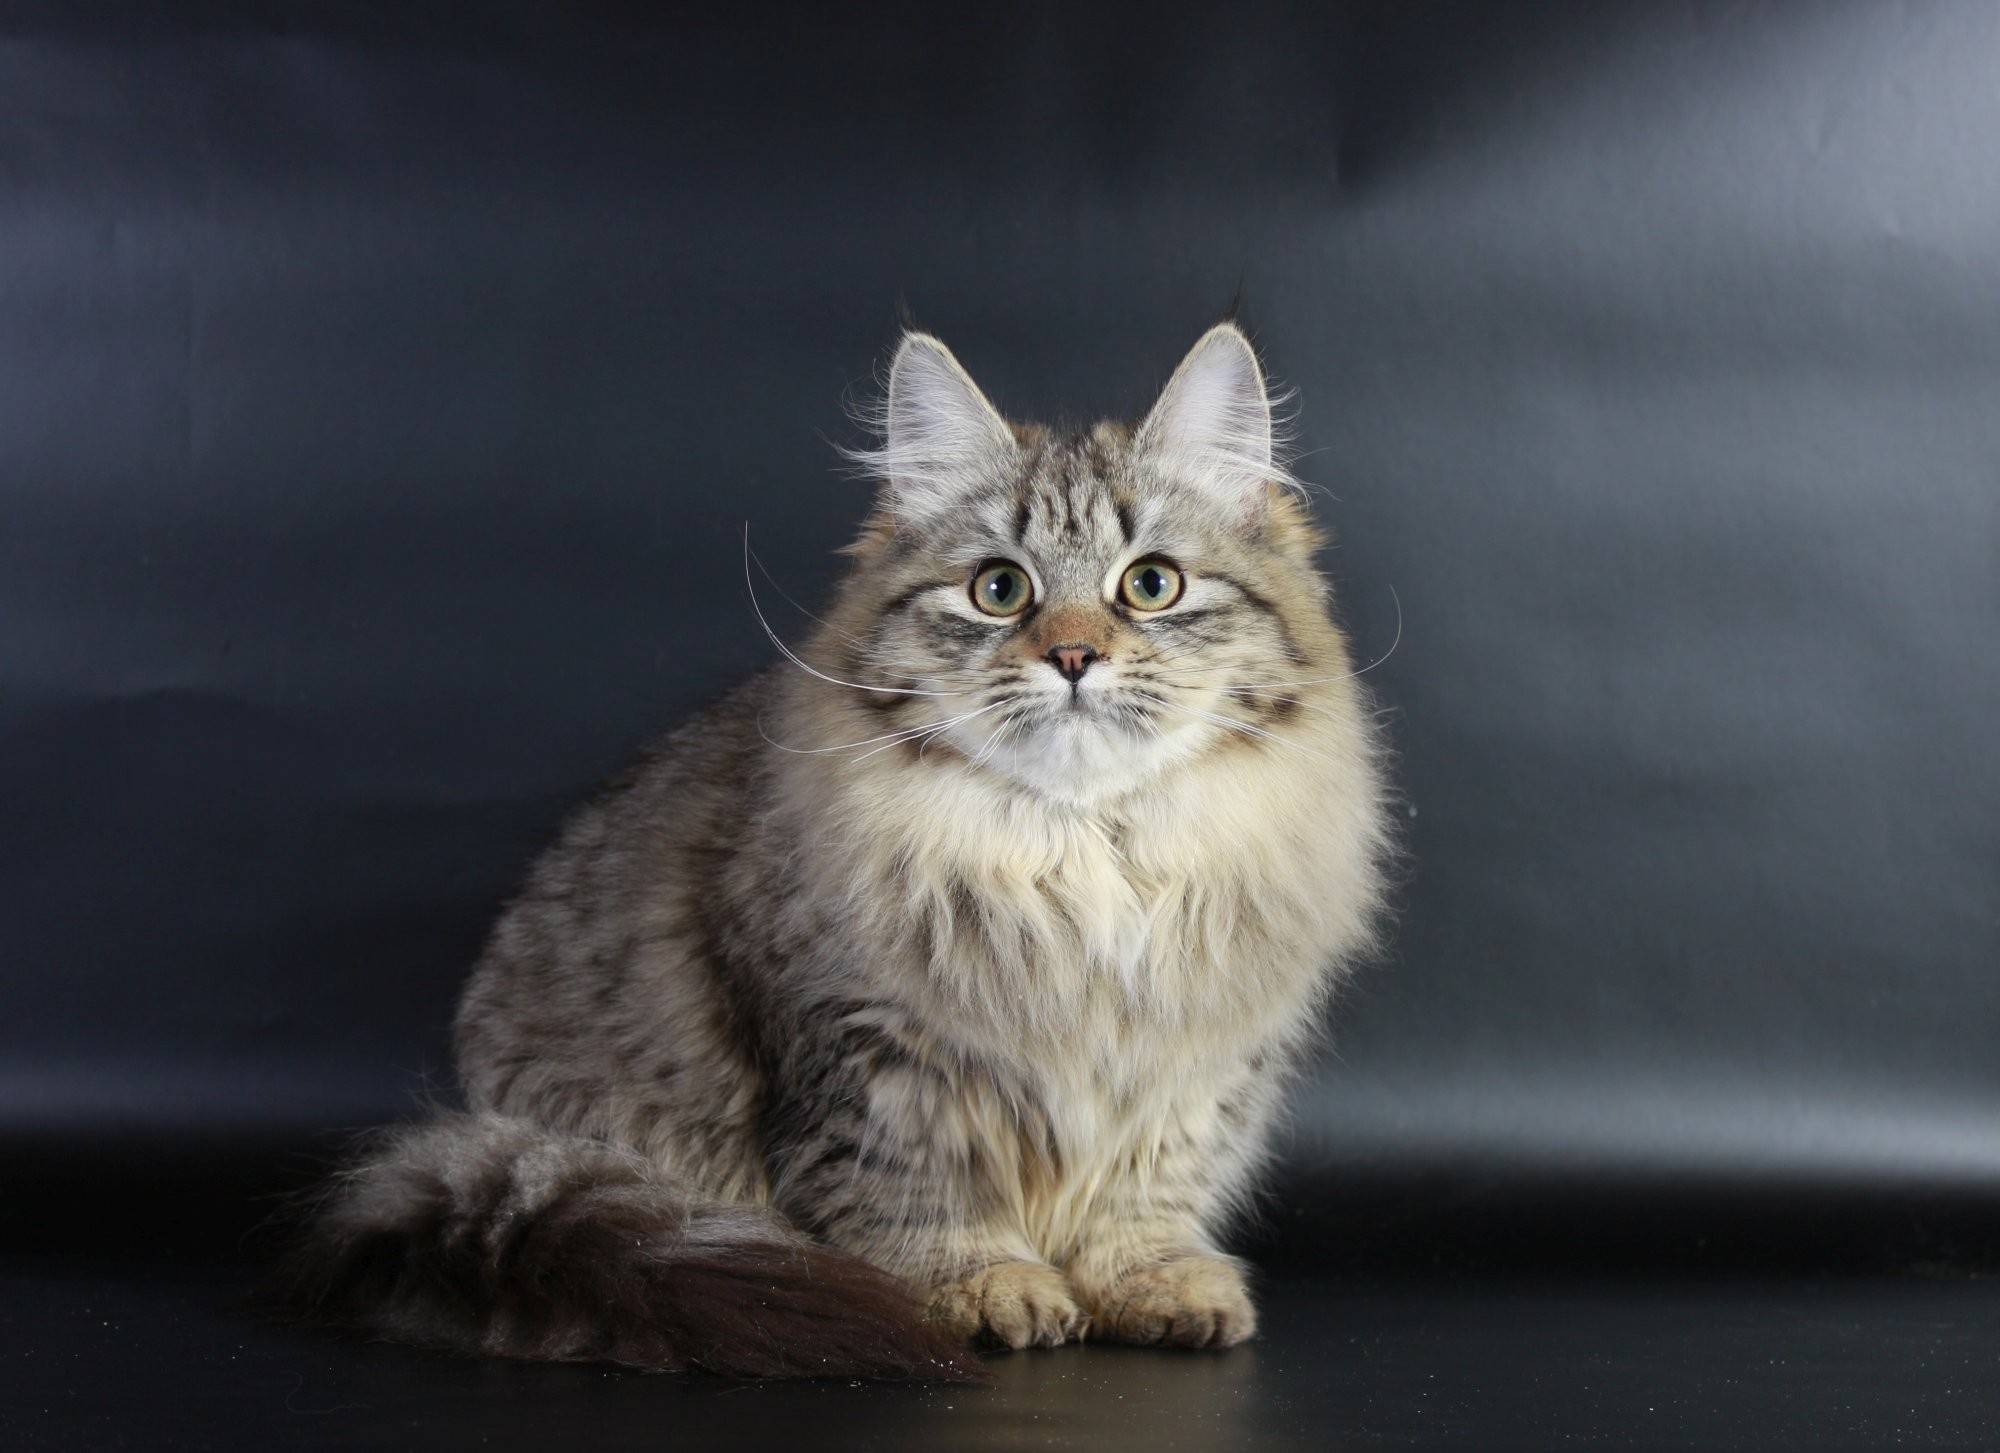 Сибирская кошка: описание породы, характер и особенности ухода